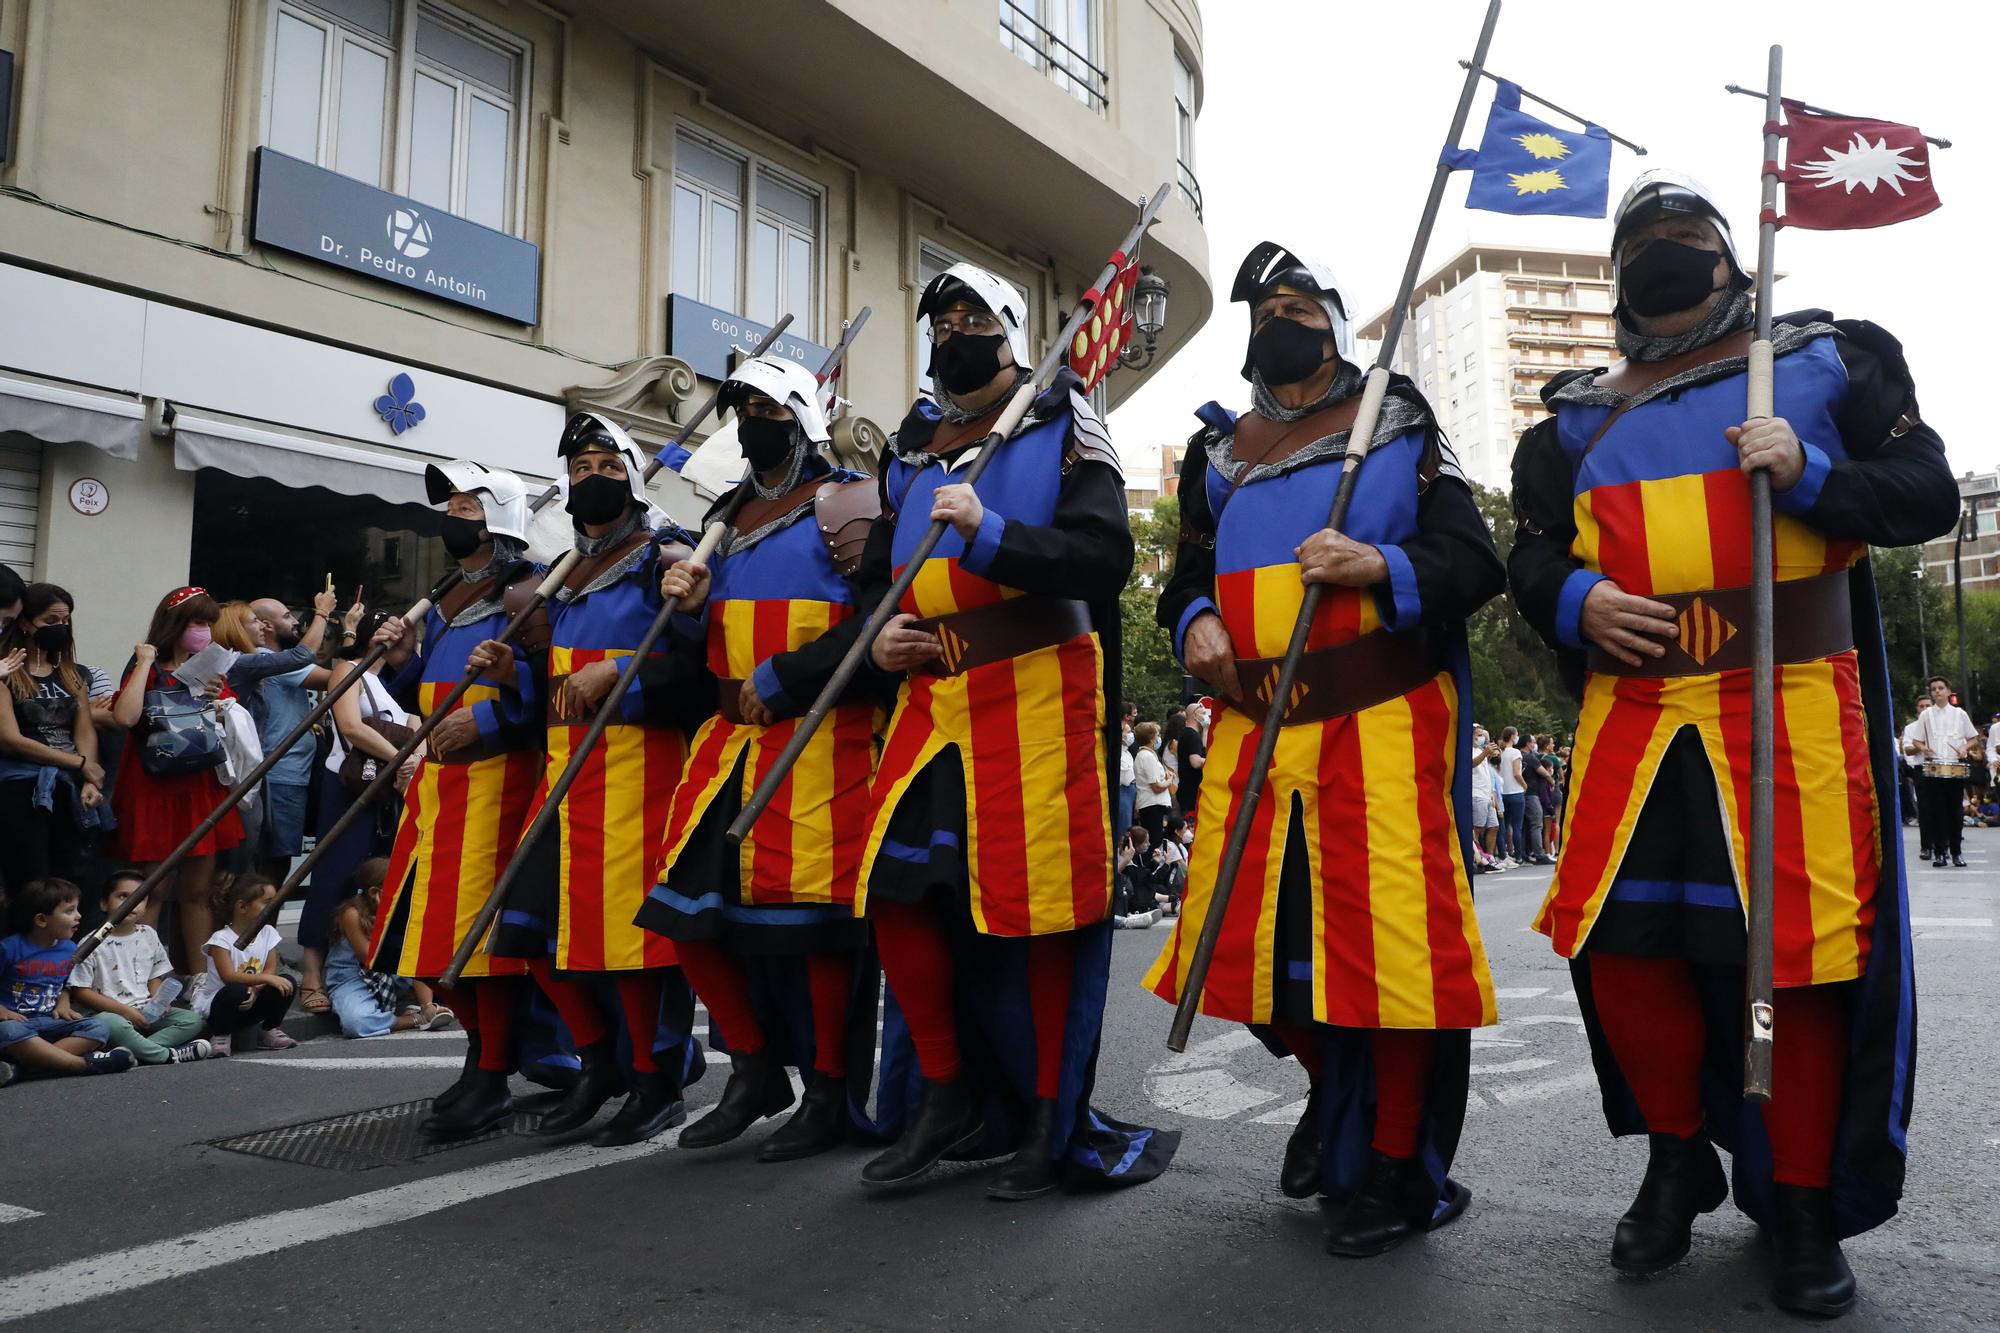 Las fotos del desfile de Moros y Cristianos en València